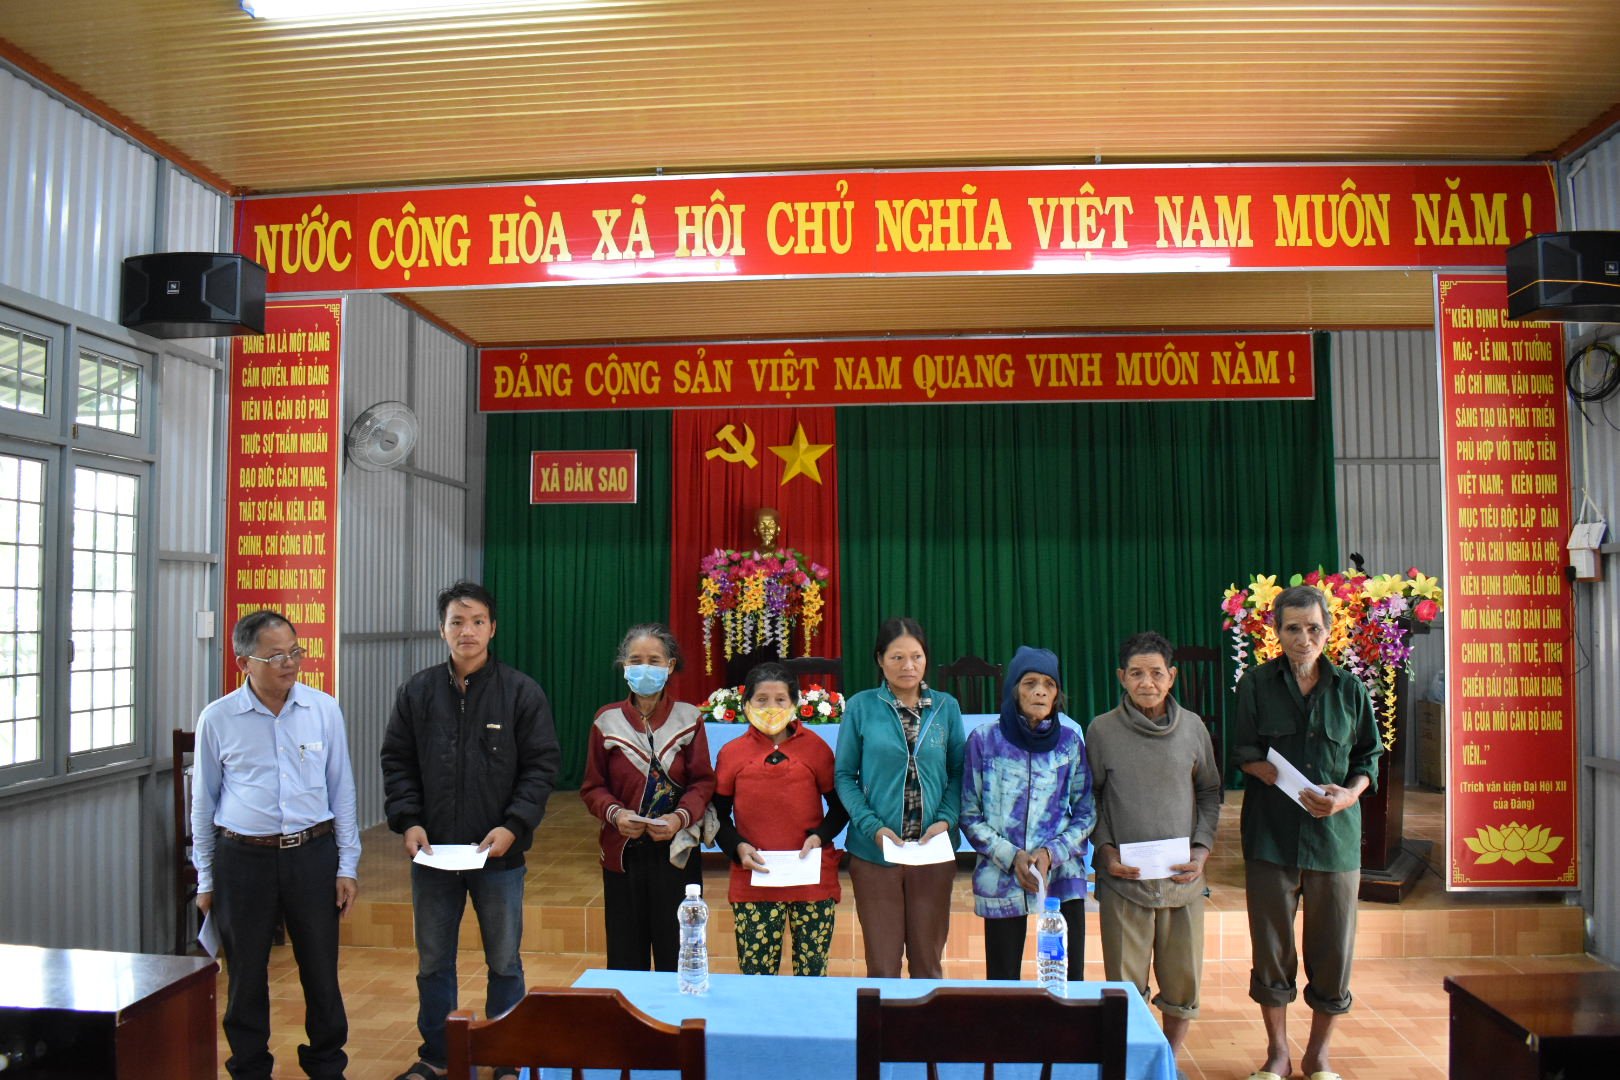 Đoàn công tác của Sở Khoa học và Công nghệ tỉnh Kon Tum thăm tặng quà các gia đình chính sách tại xã Đăk Sao, huyện Tu Mơ Rông nhân kỷ niệm 74 năm Ngày Thương binh liệt sỹ (27/7/1947 - 27/7/2021)